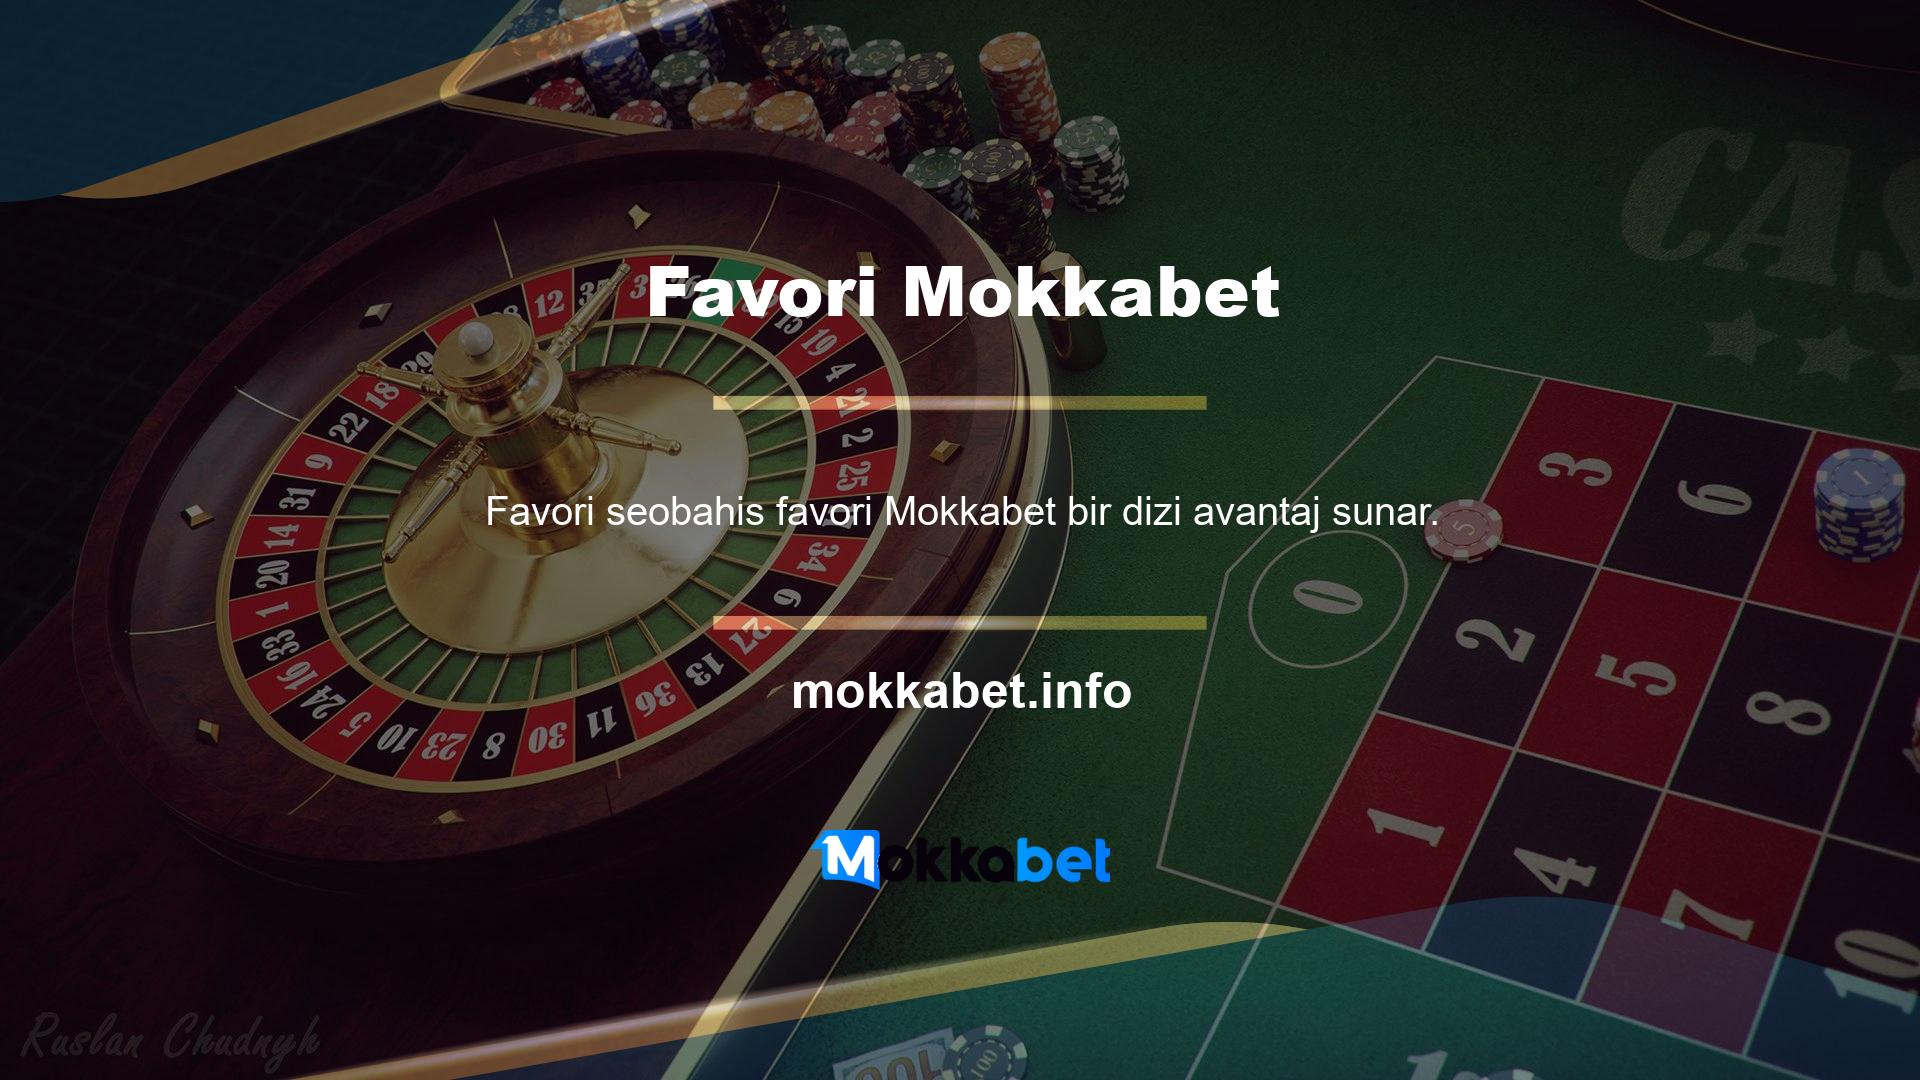 Kaliteli casino promosyonları sunan Mokkabet siteleri, sunmayanlardan daha iyidir